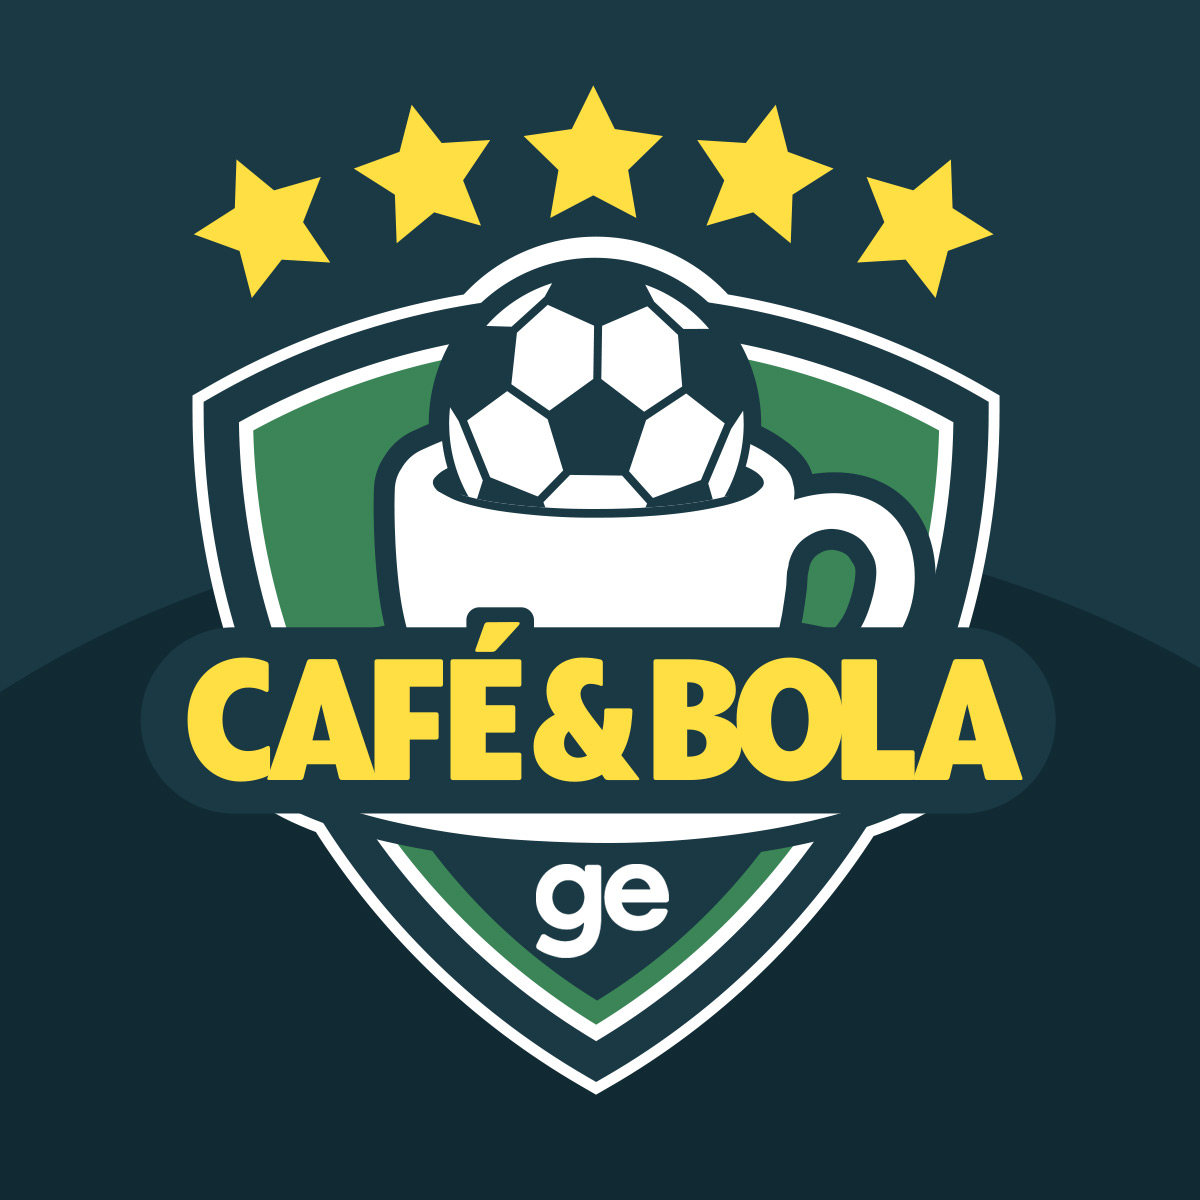 Café&Bola #04 - Flamengo segue vencendo, Botafogo embala na Série B, Fluminense se complica e Vasco perde outra fora  